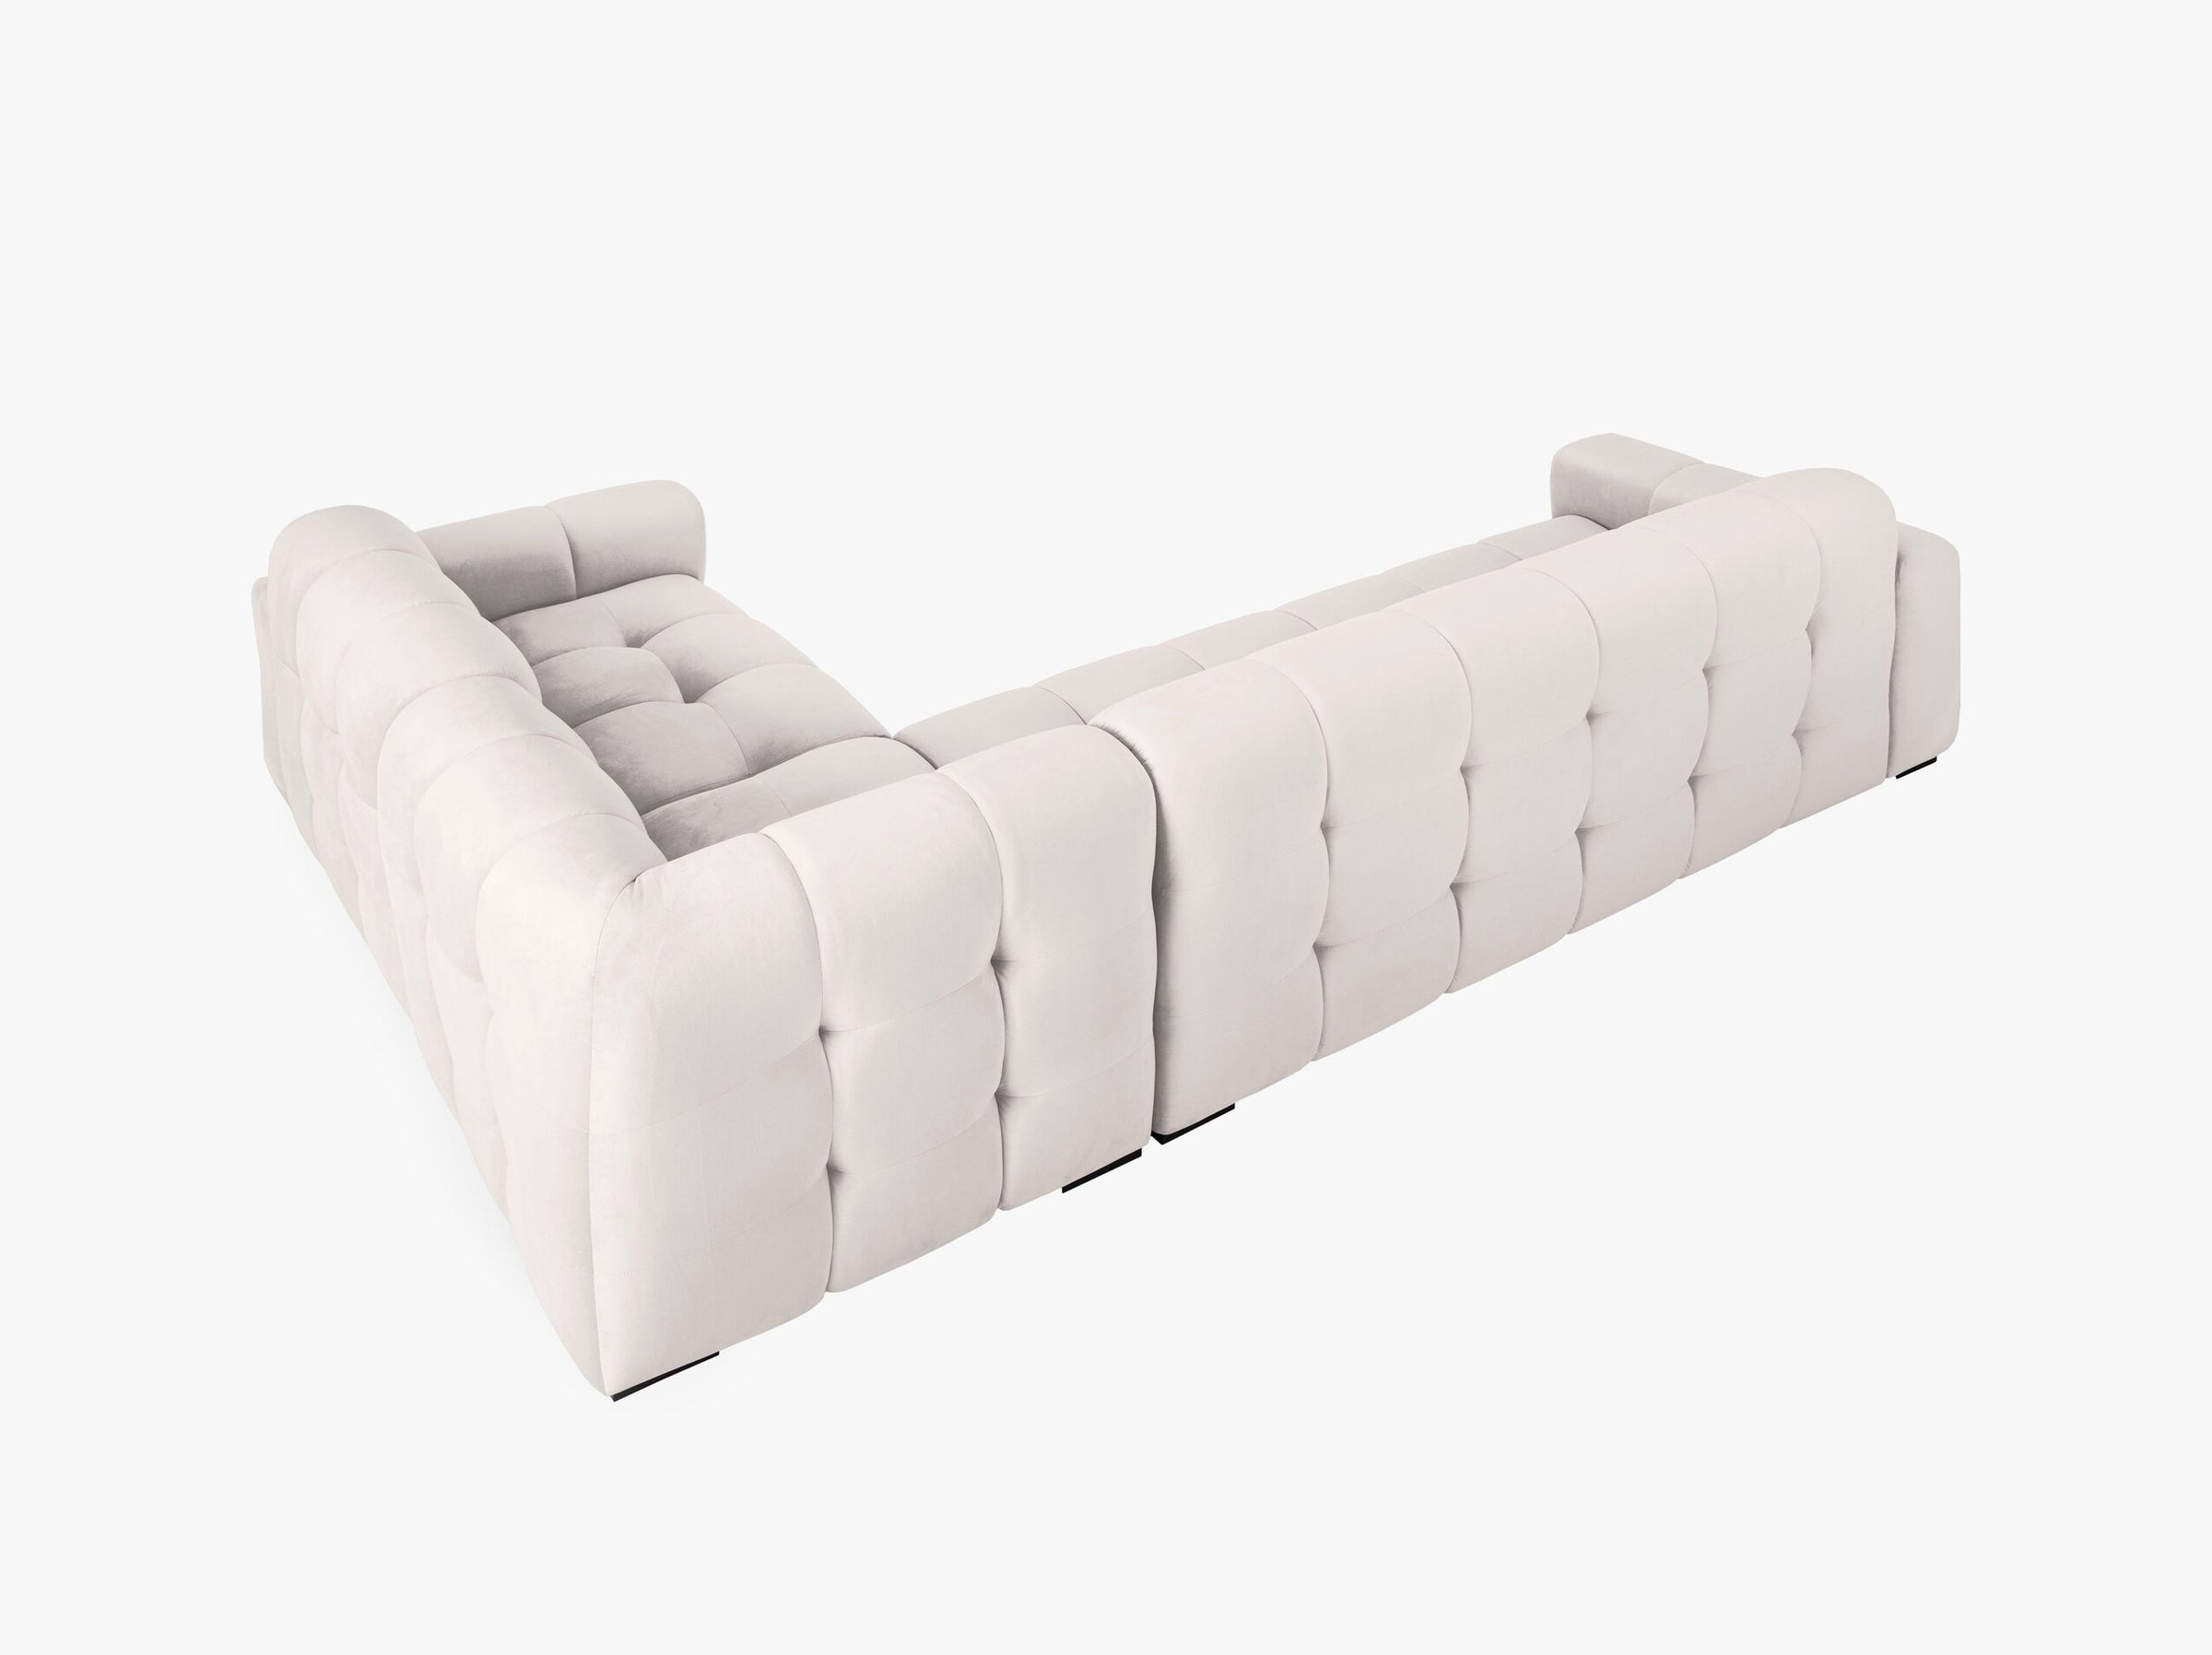 Kendal sofas velvet light grey